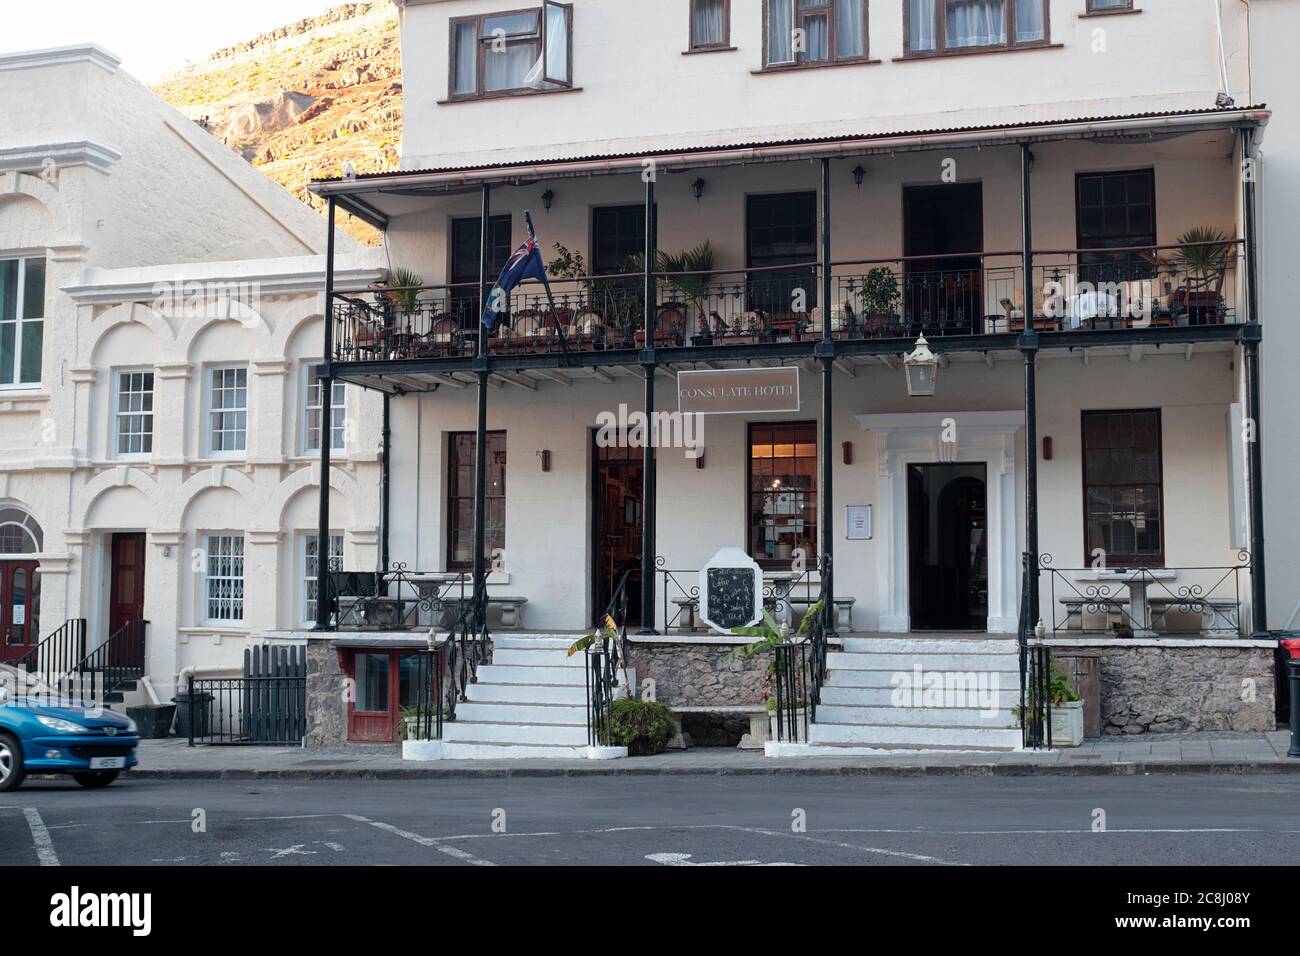 Jamestown, St Helena, vista sulla strada, Consolate Hotel con balcone in ghisa, 20 aprile 2018 Foto Stock